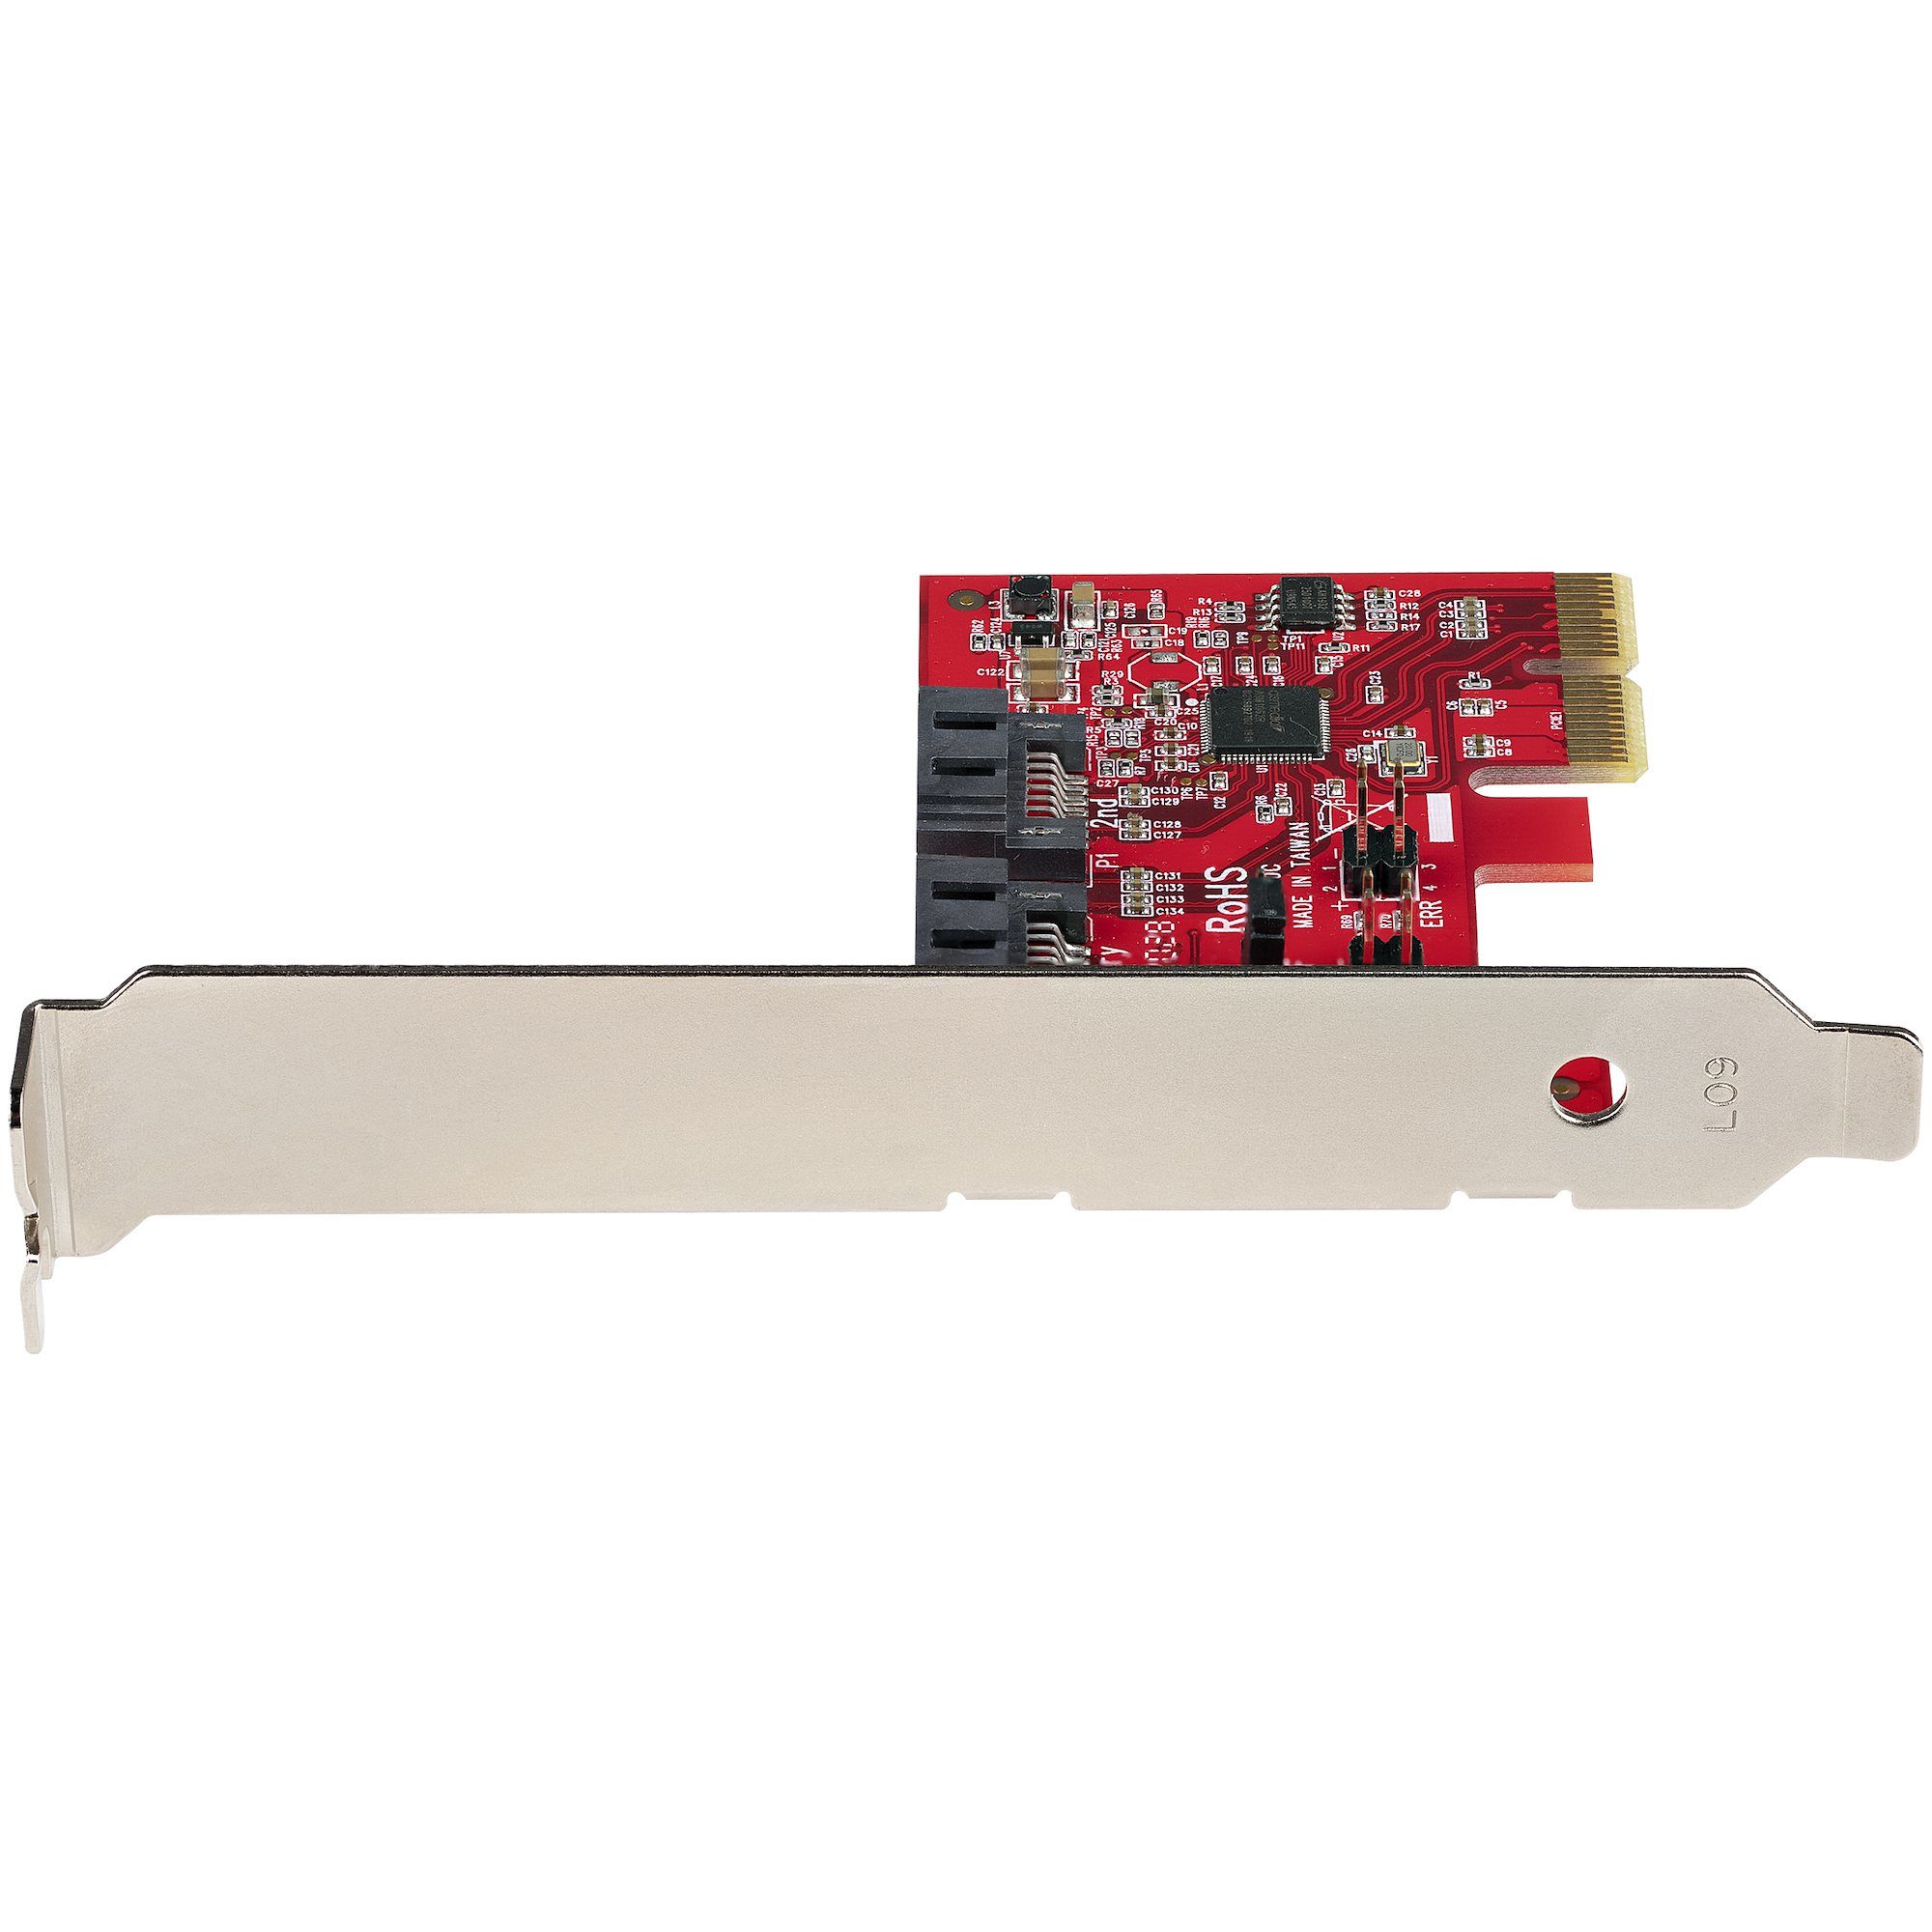 SATA III RAID PCIE CARD 2PT/._3